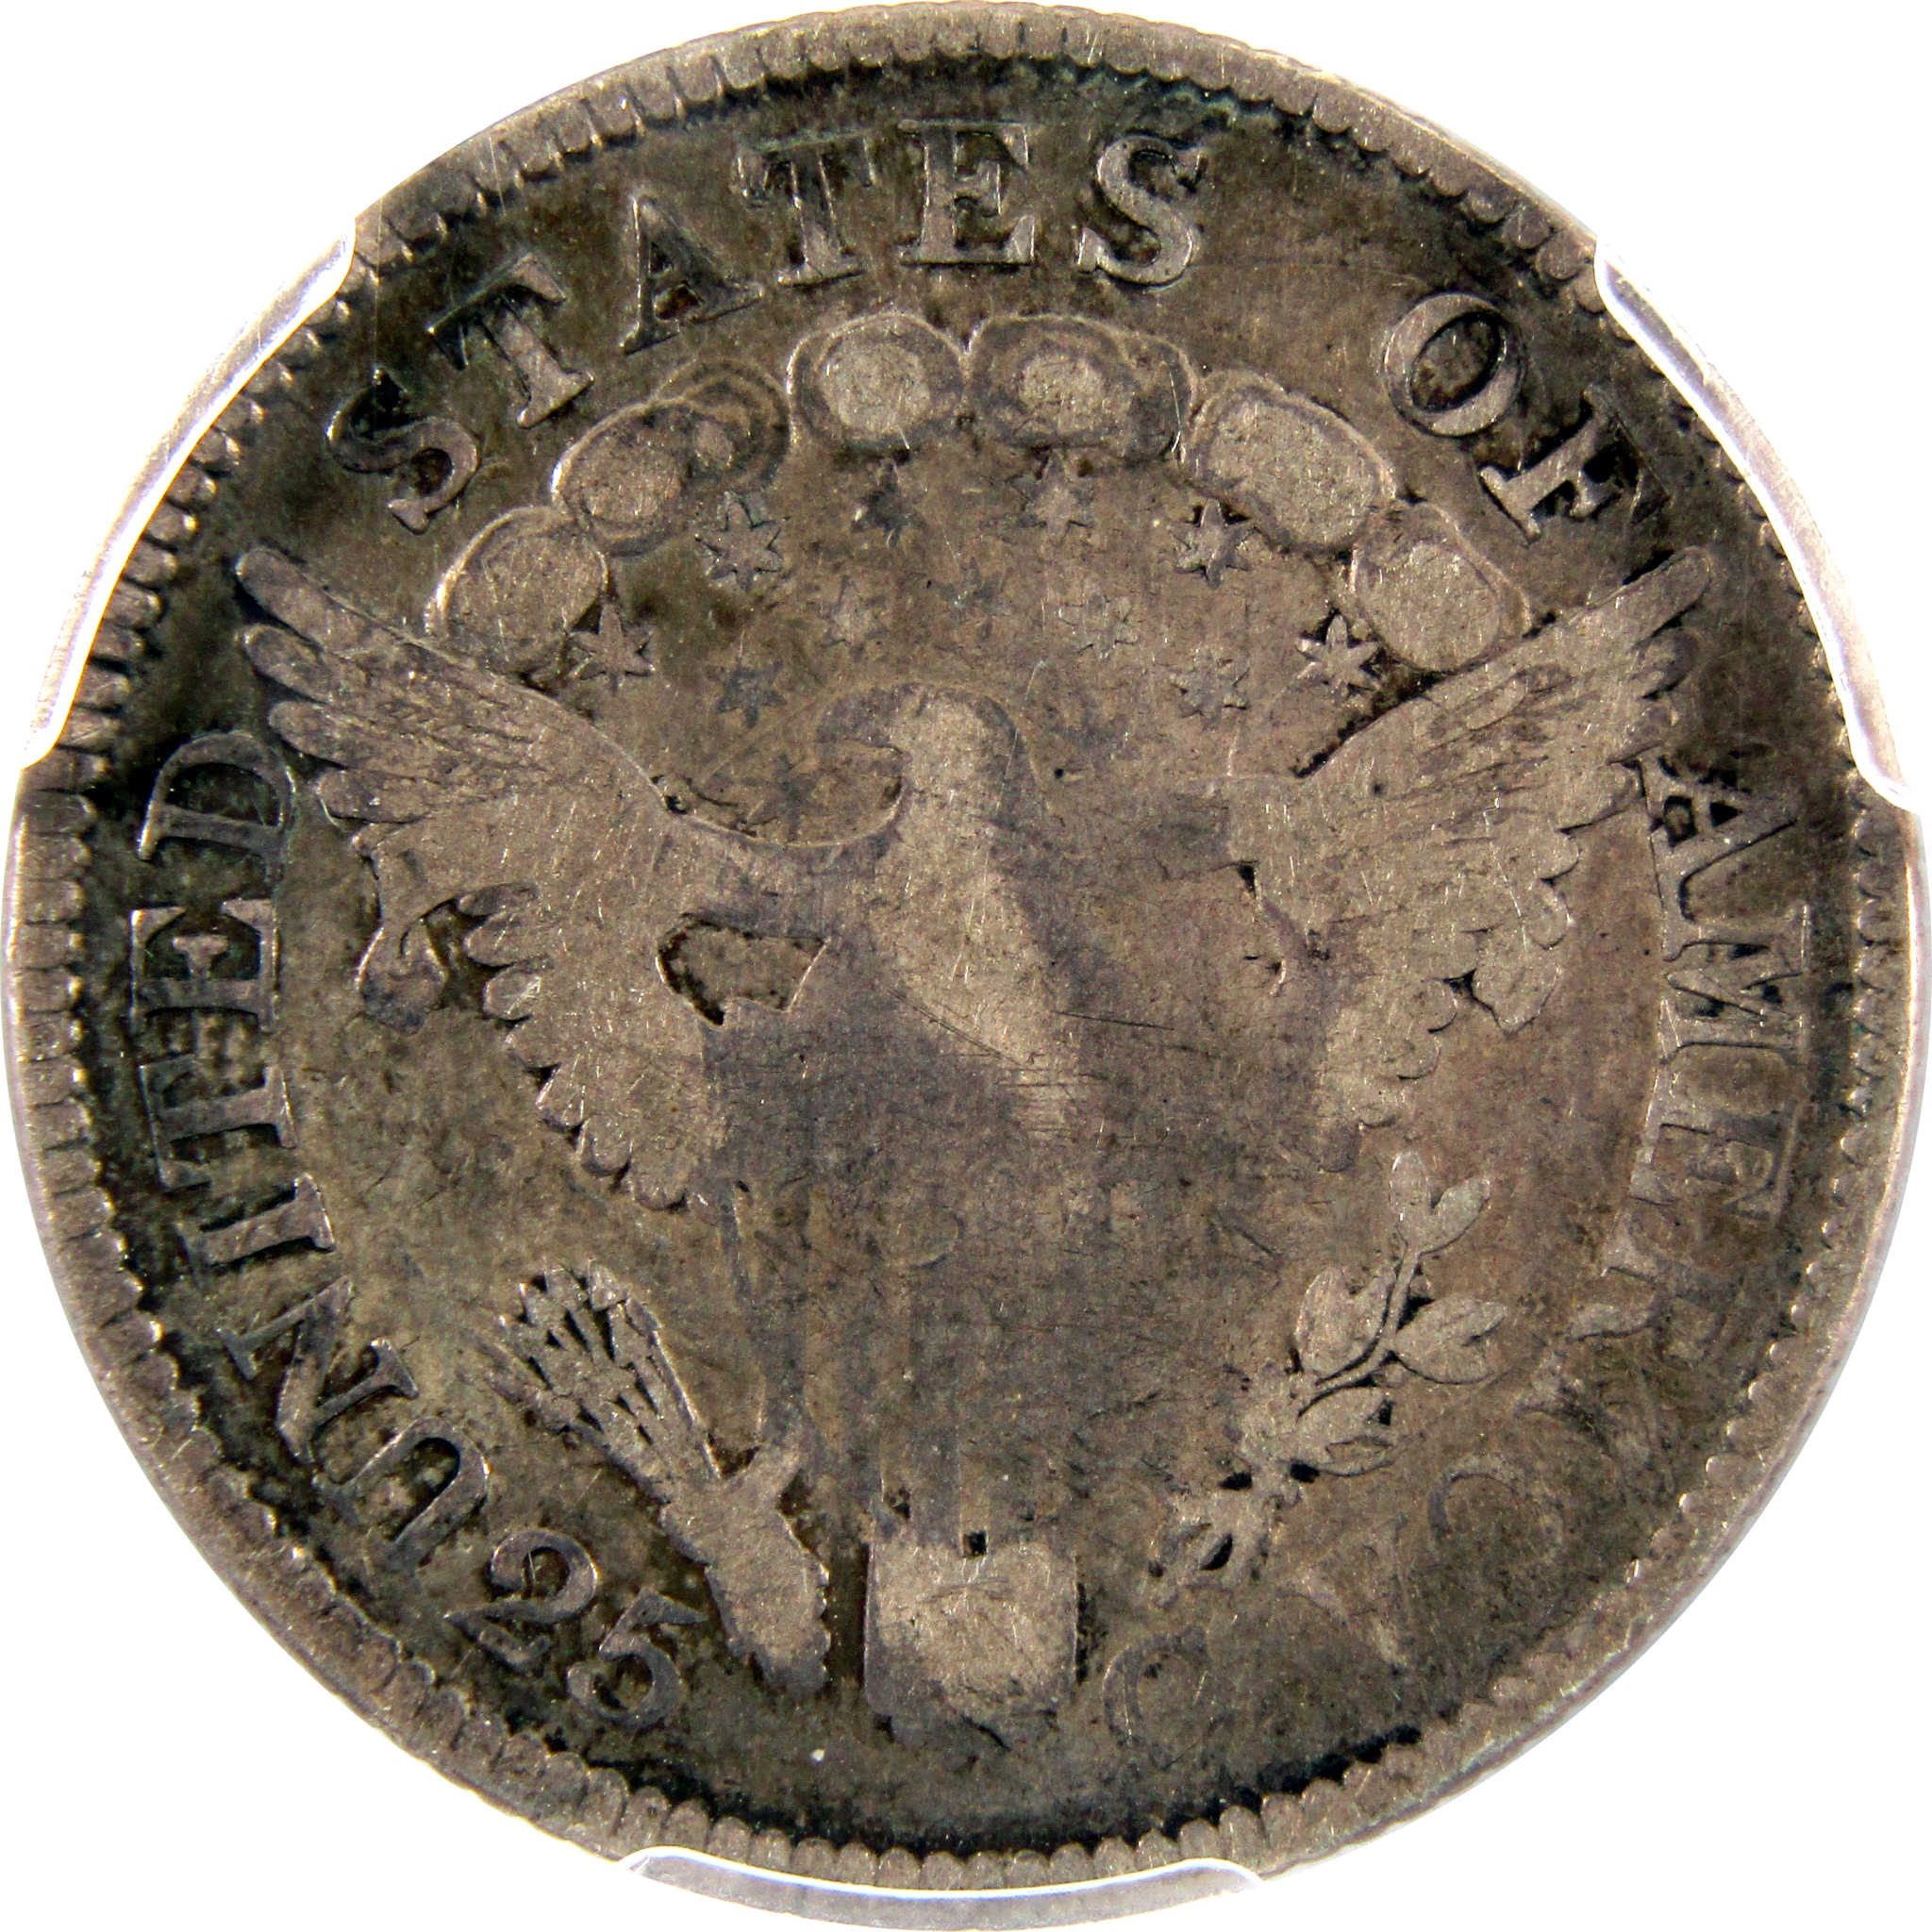 1806 Draped Bust Quarter VG 8 PCGS 89.24% Silver 25c Coin SKU:I10487